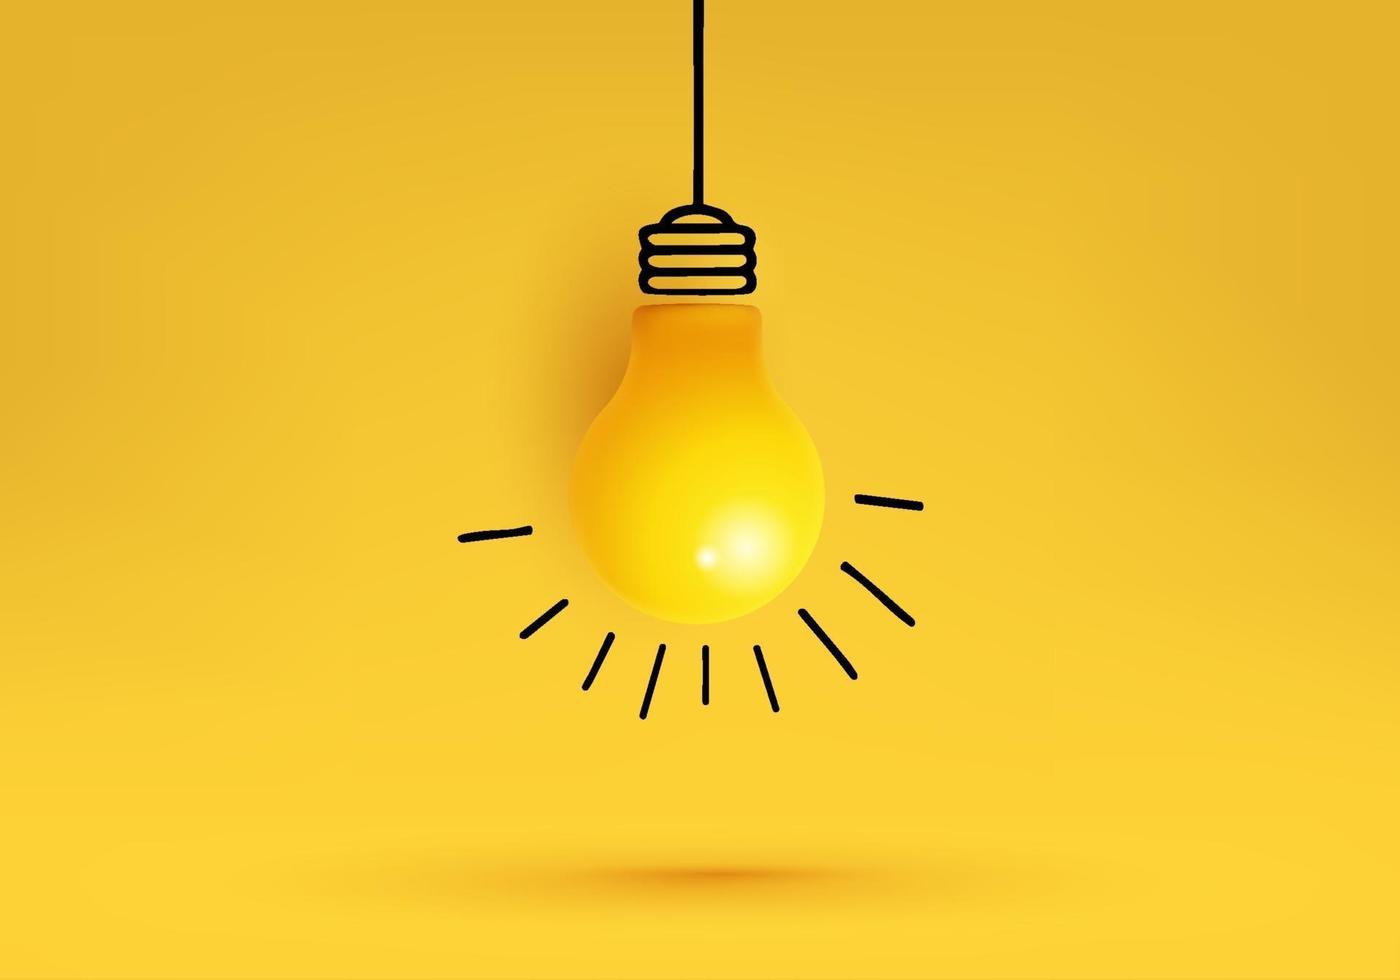 ideia criativa, inspiração, nova ideia e vetor de conceito de inovação com lâmpada em fundo amarelo.